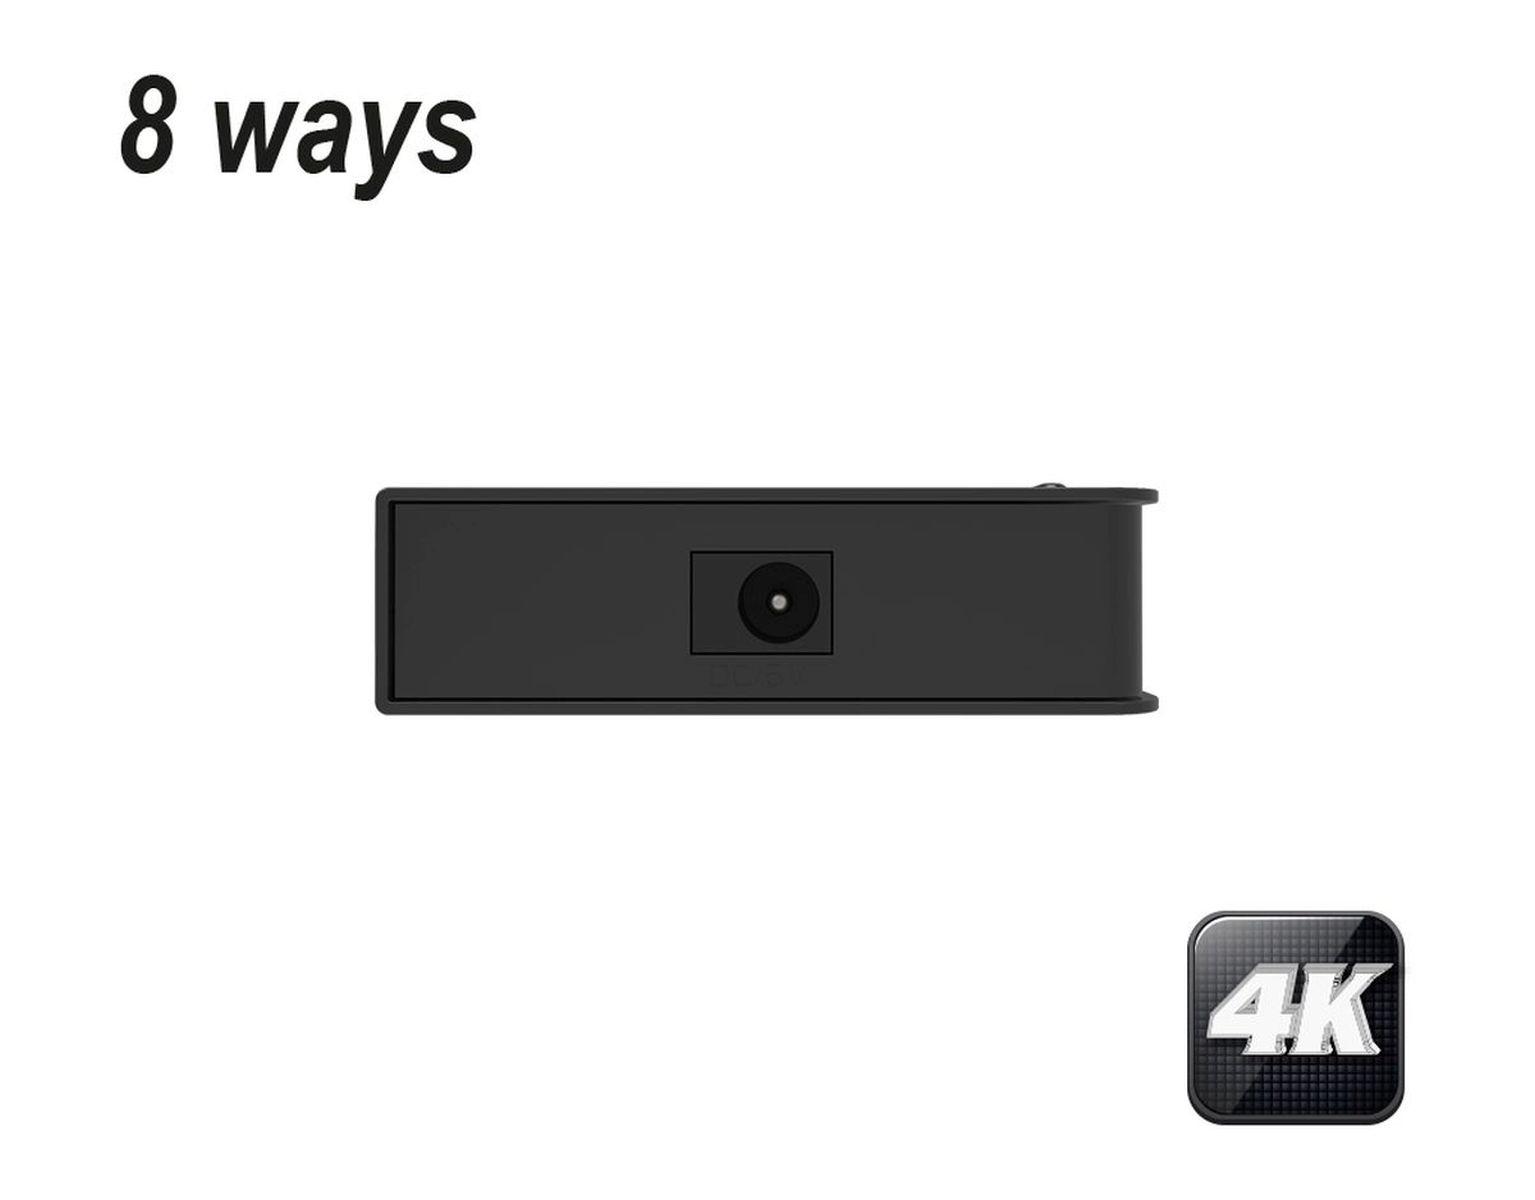 8 EDISION X HDMI 1 8 fach 4K SPLITTER HDMI Verteiler